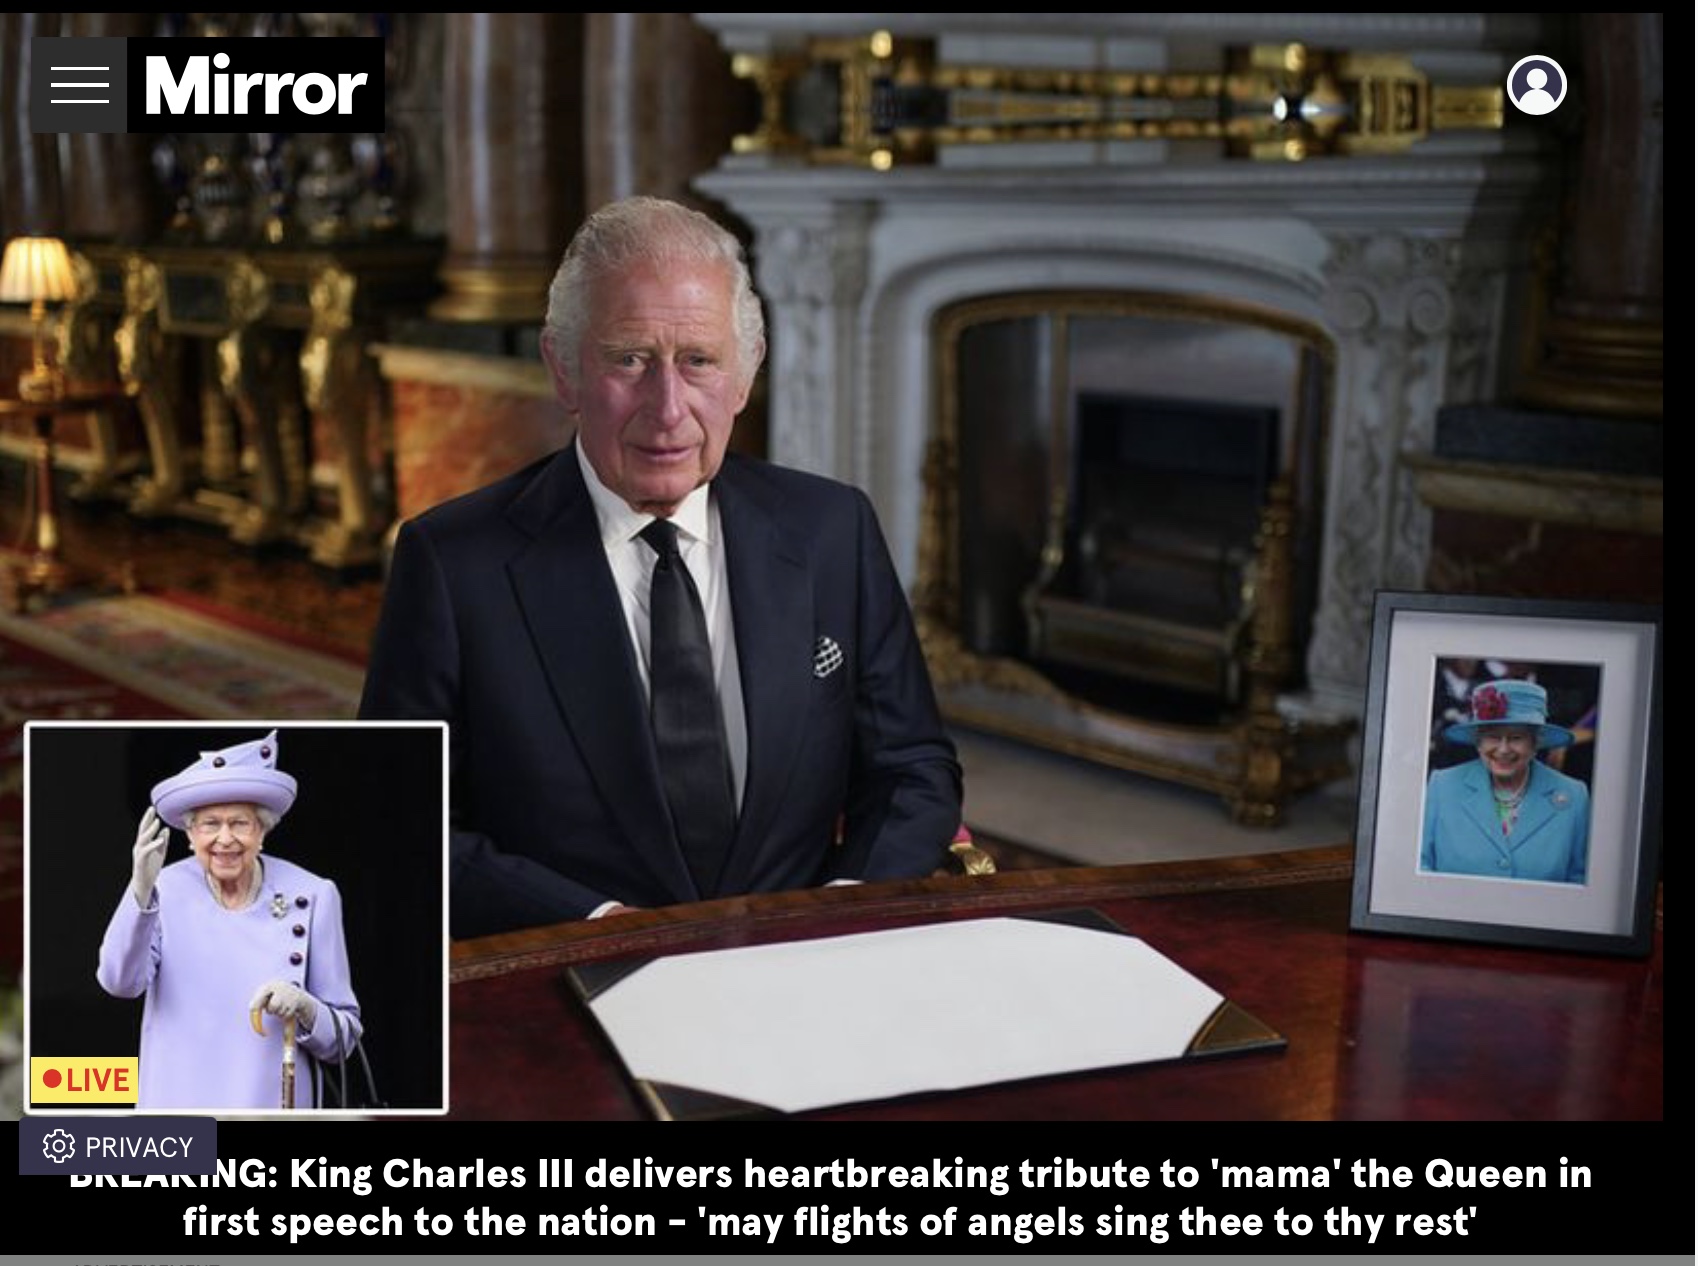 che cosa ha detto davvero re Carlo III nel suo apparentemente innocuo primo discorso da sovrano?